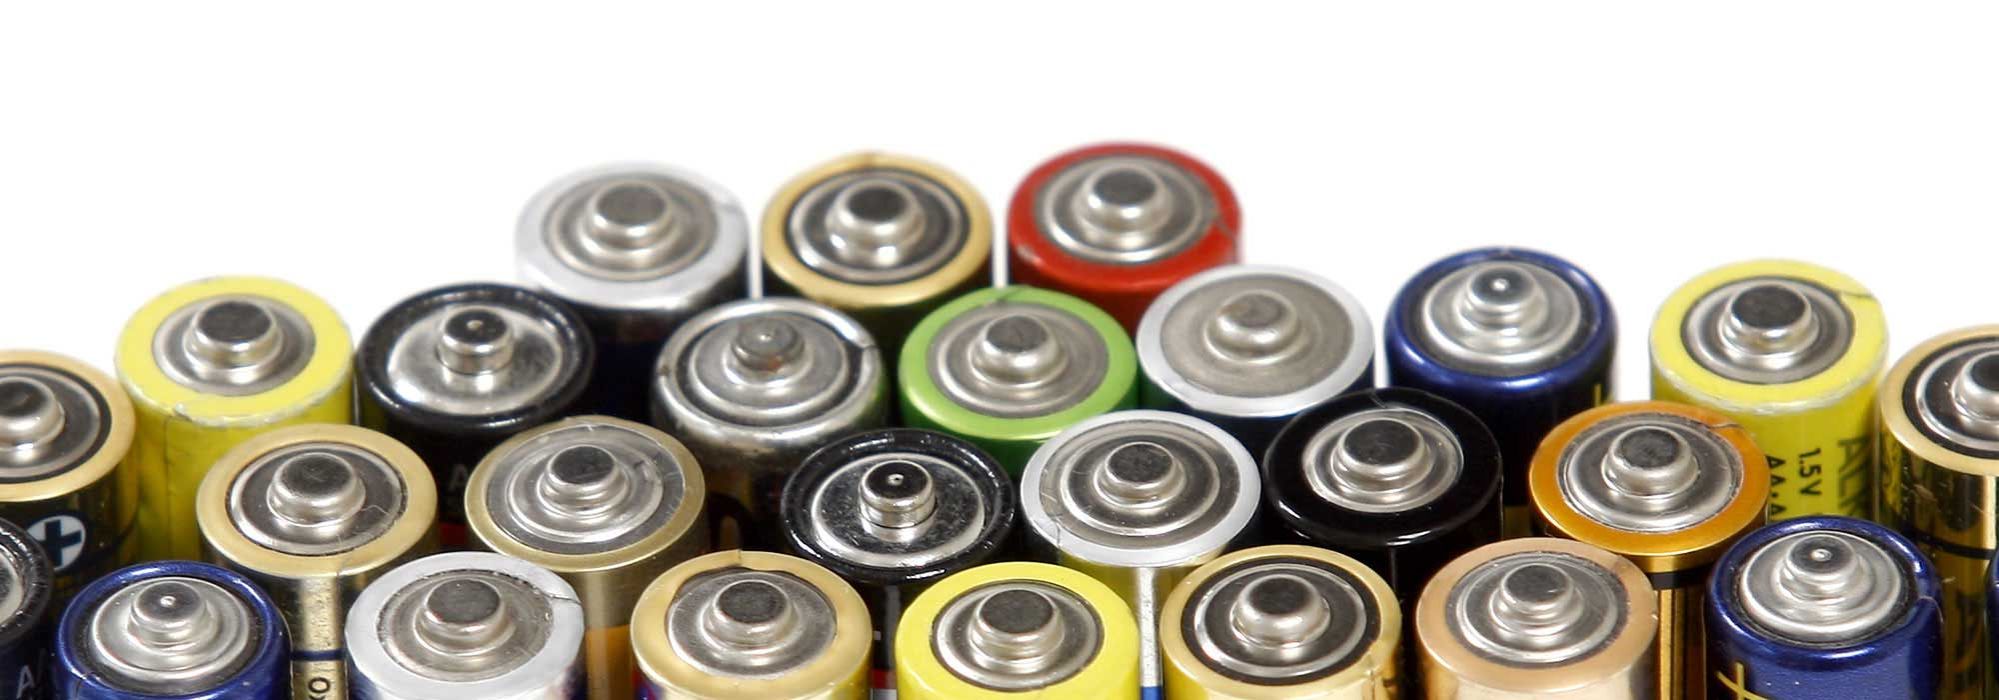 Batterien entsorgen - umweltfreundlich, kostengünstig und konform nach BattG mit hpm.